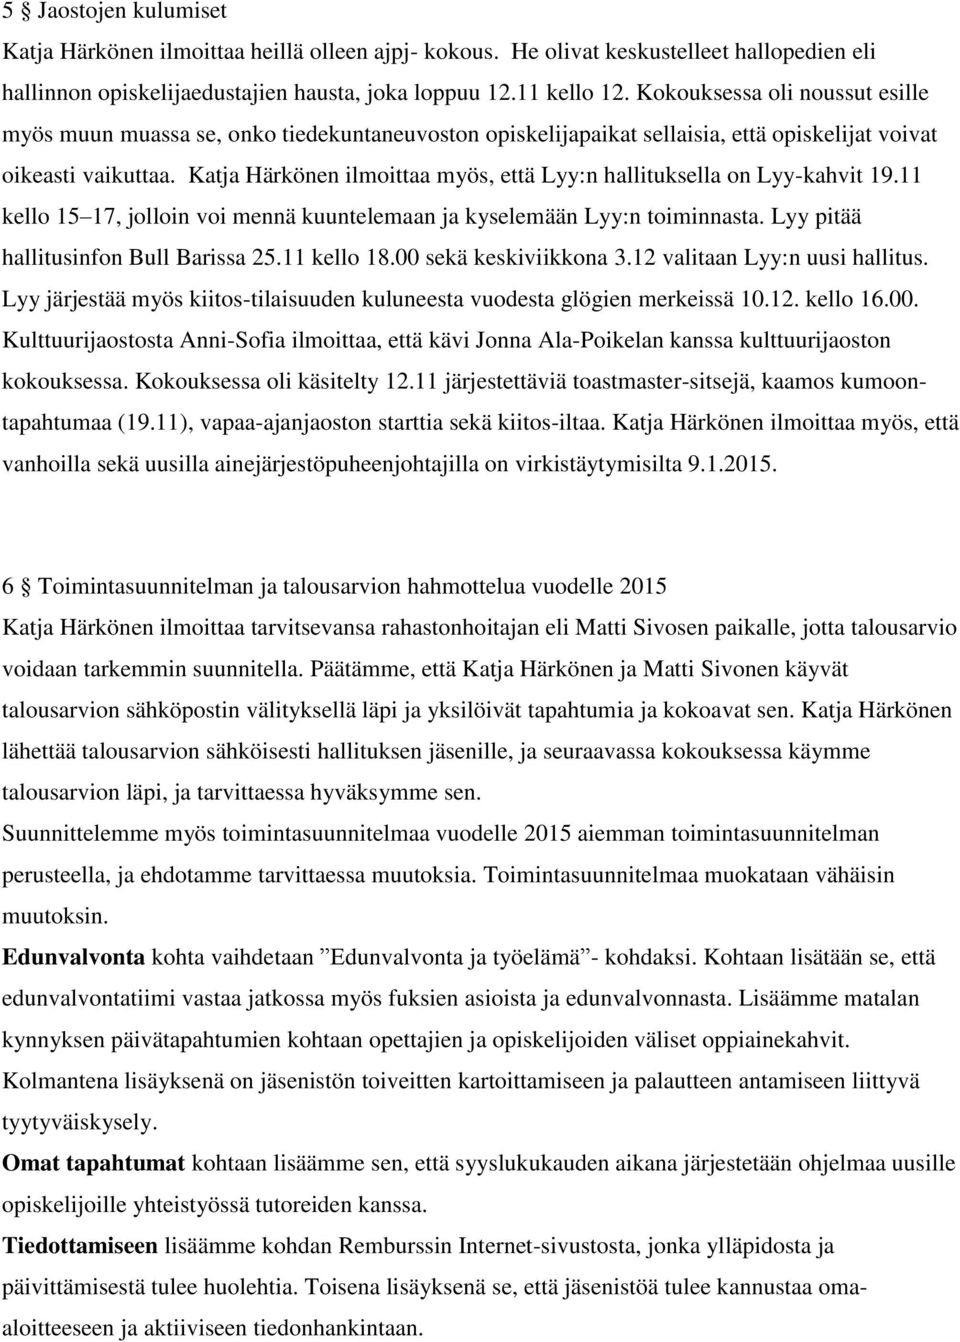 Katja Härkönen ilmoittaa myös, että Lyy:n hallituksella on Lyy-kahvit 19.11 kello 15 17, jolloin voi mennä kuuntelemaan ja kyselemään Lyy:n toiminnasta. Lyy pitää hallitusinfon Bull Barissa 25.